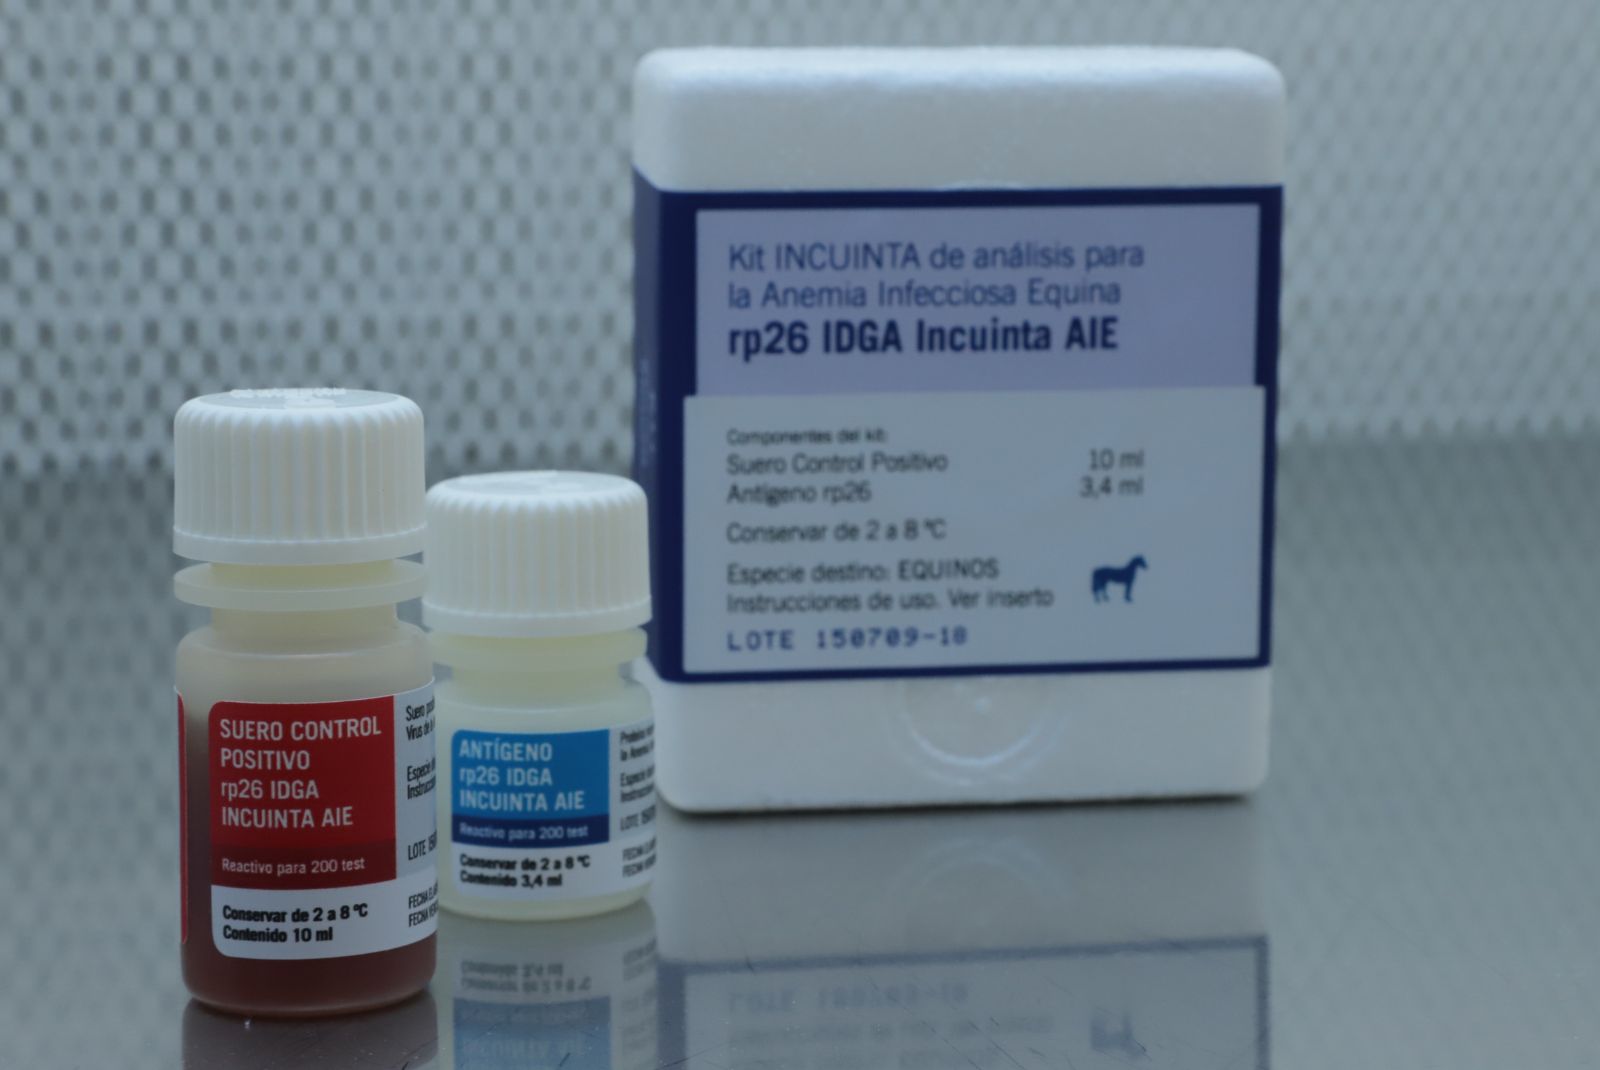 En tiempo récord: duplican la producción anual del kit de anemia infecciosa equina